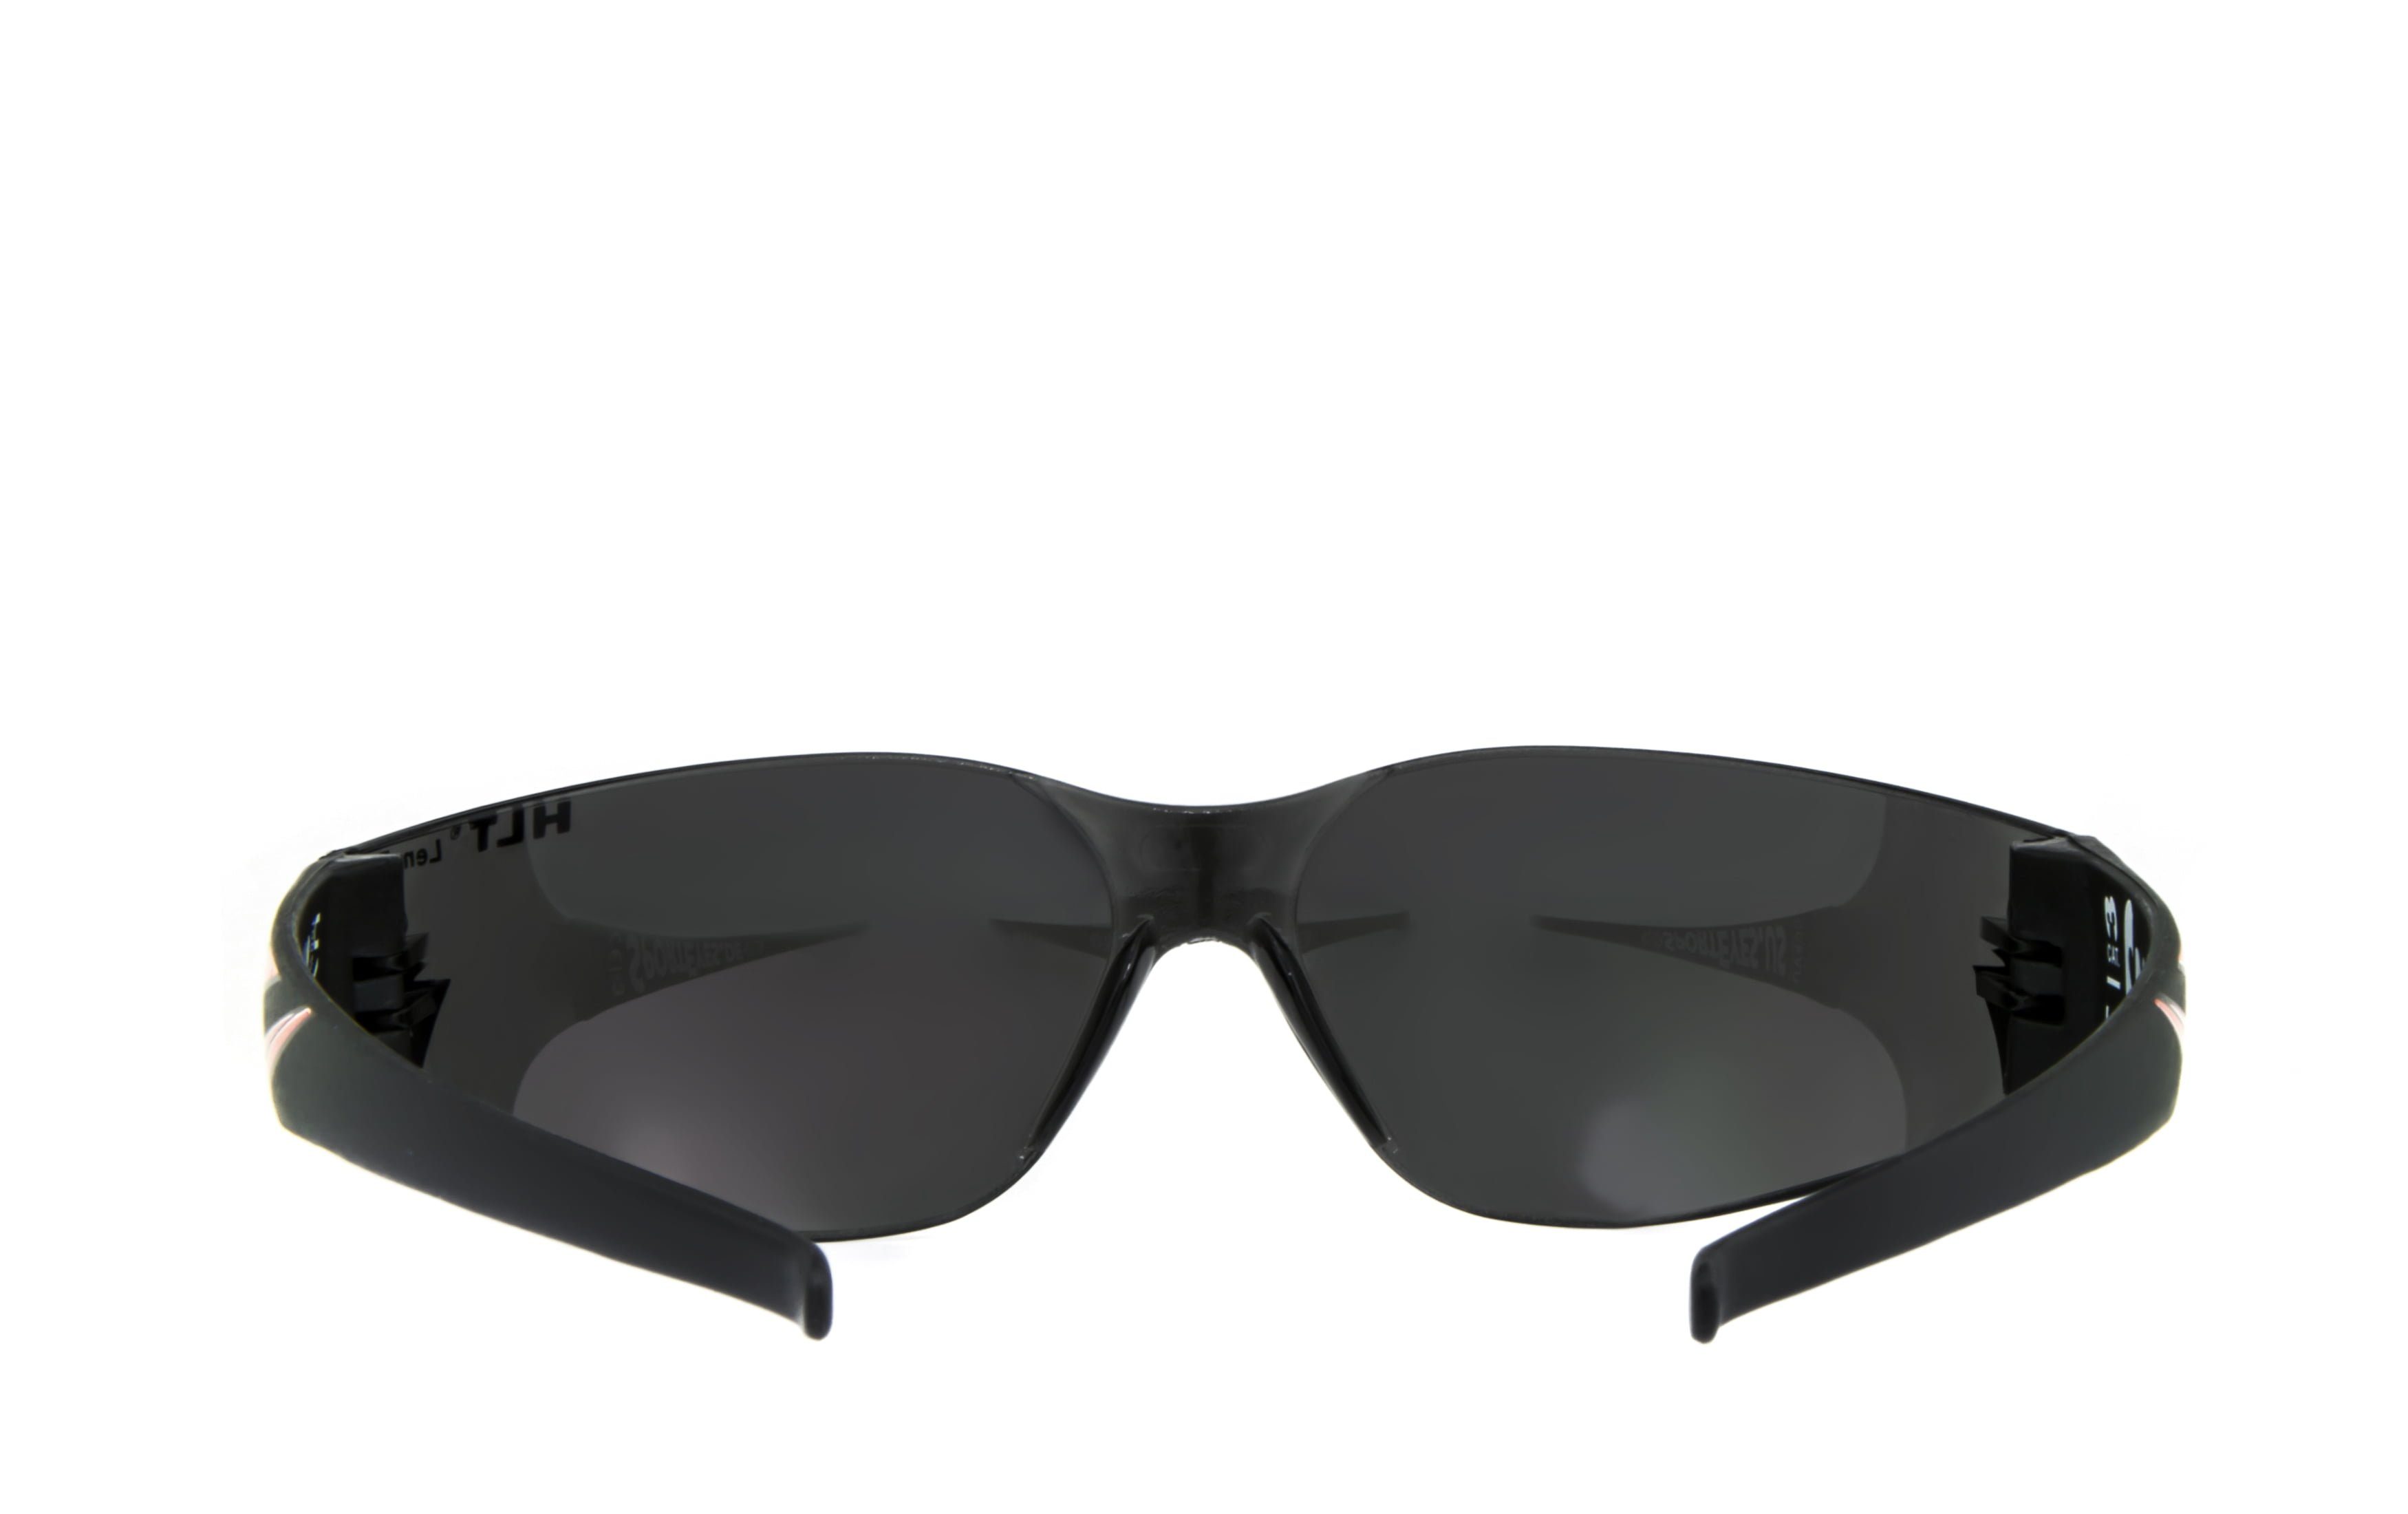 Kunststoff-Sicherheitsglas Sportbrille HSE - SportEyes 3.0 durch RS, SPRINTER Steinschlagbeständig